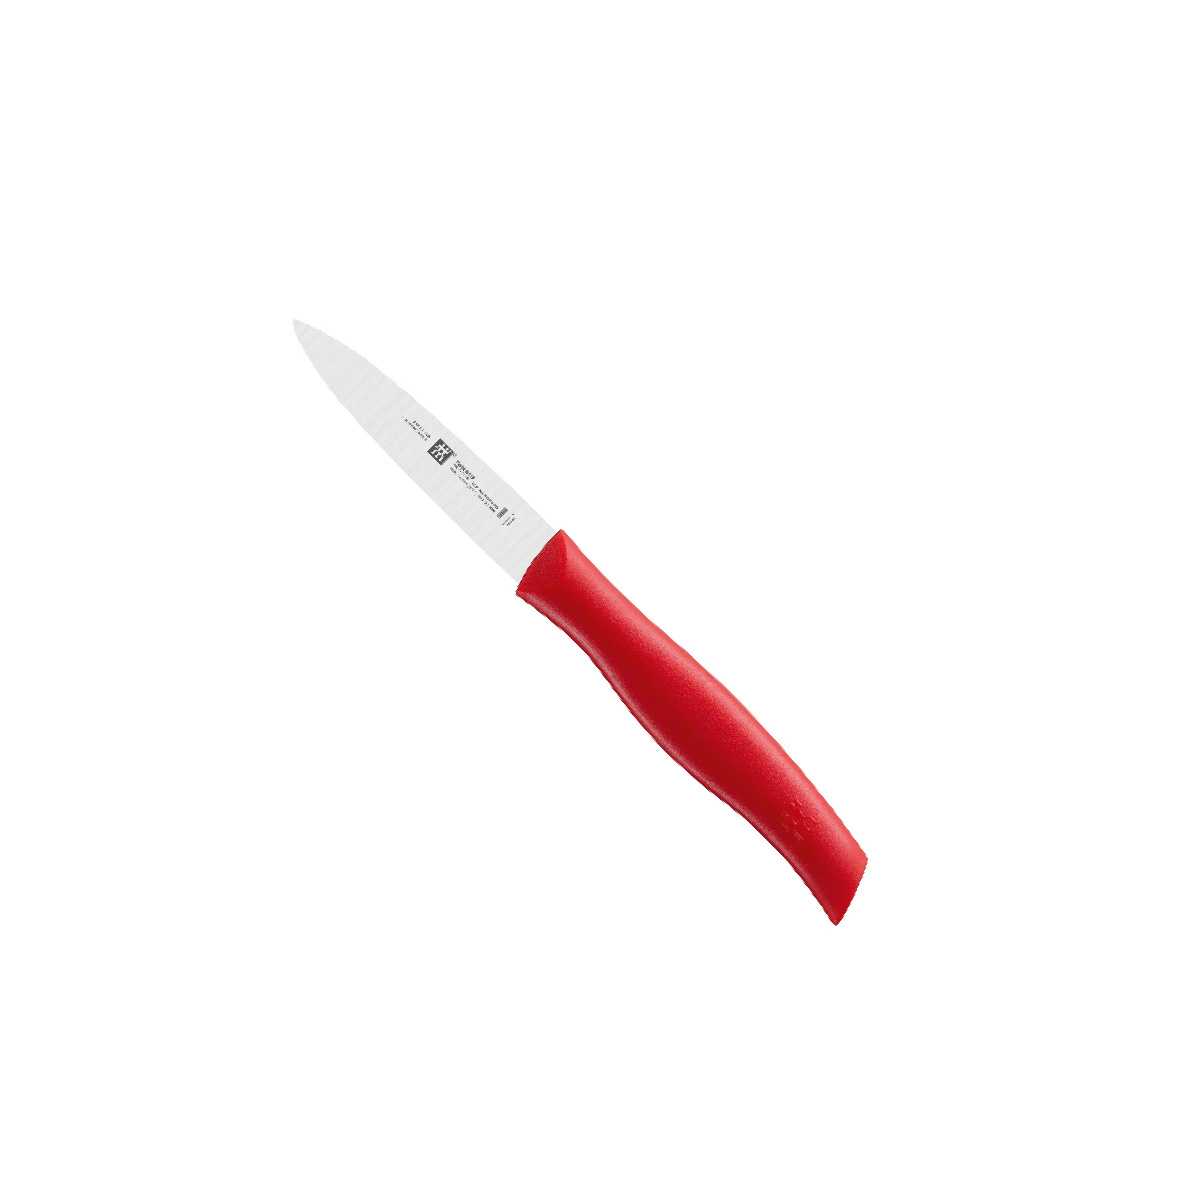 ZWILLING - Bộ dao Twin Grip màu đỏ - 2 món